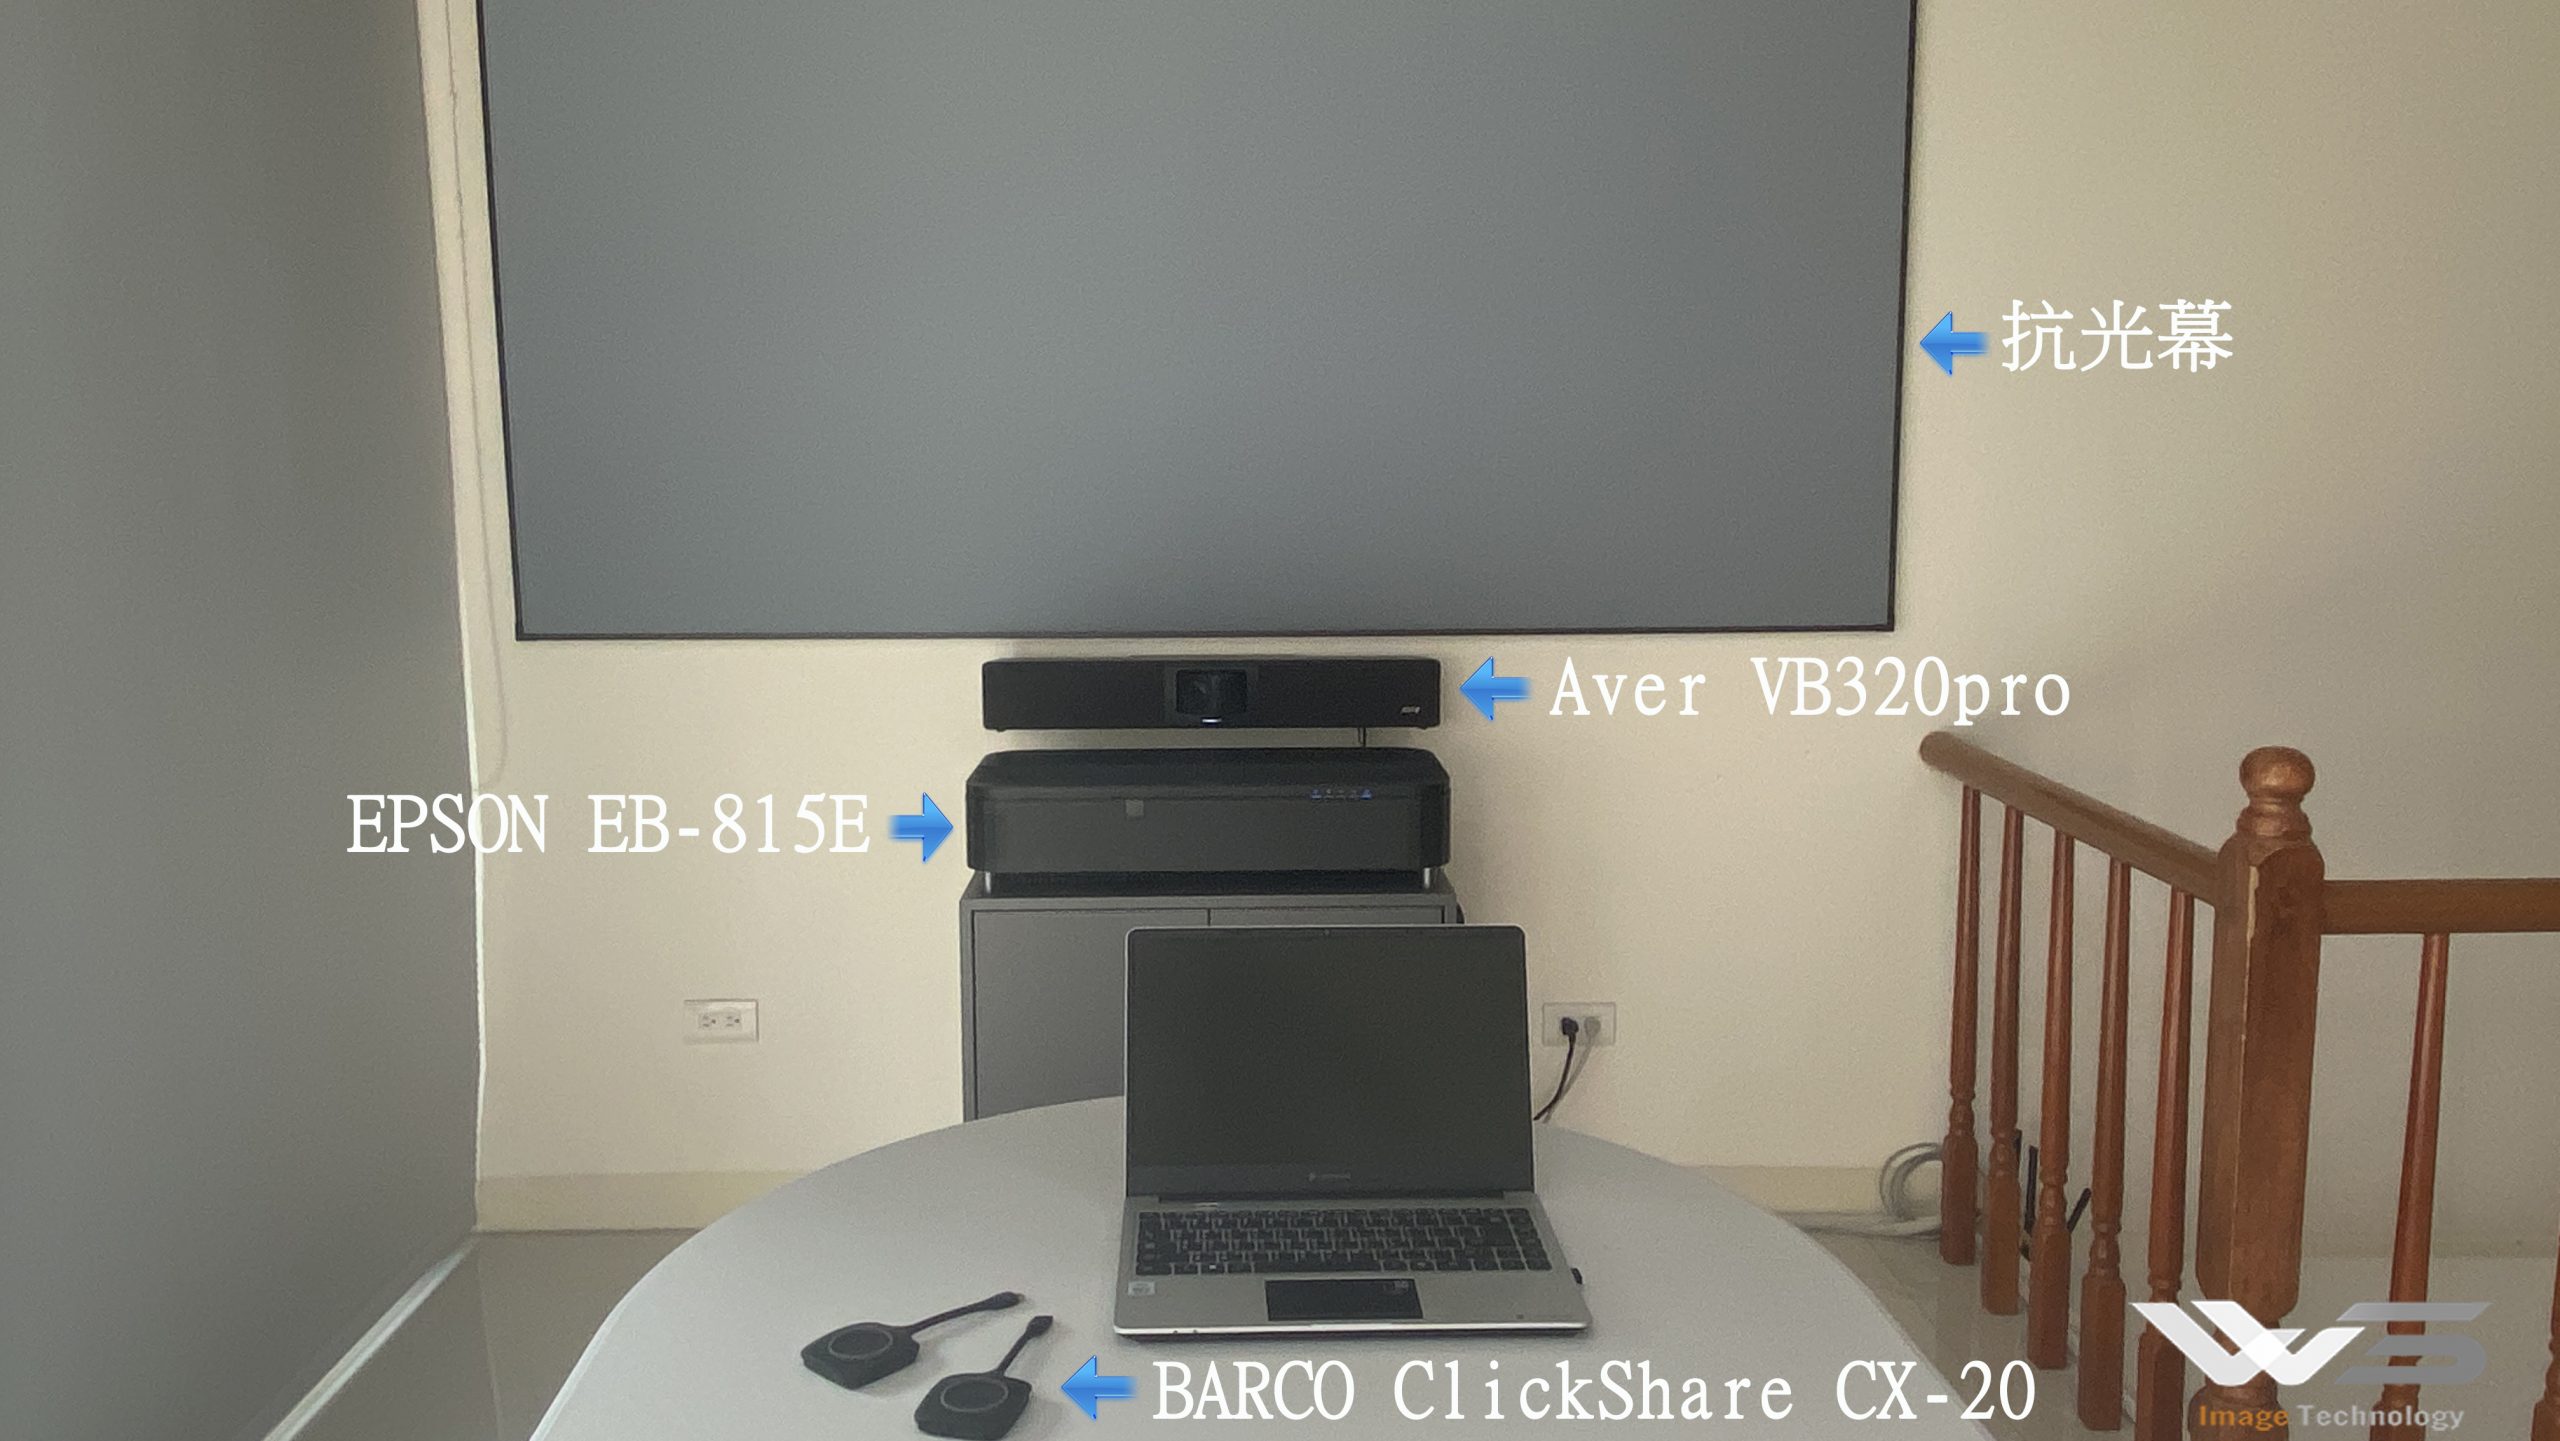 EPSON EB-810E 極短焦會議投影系統